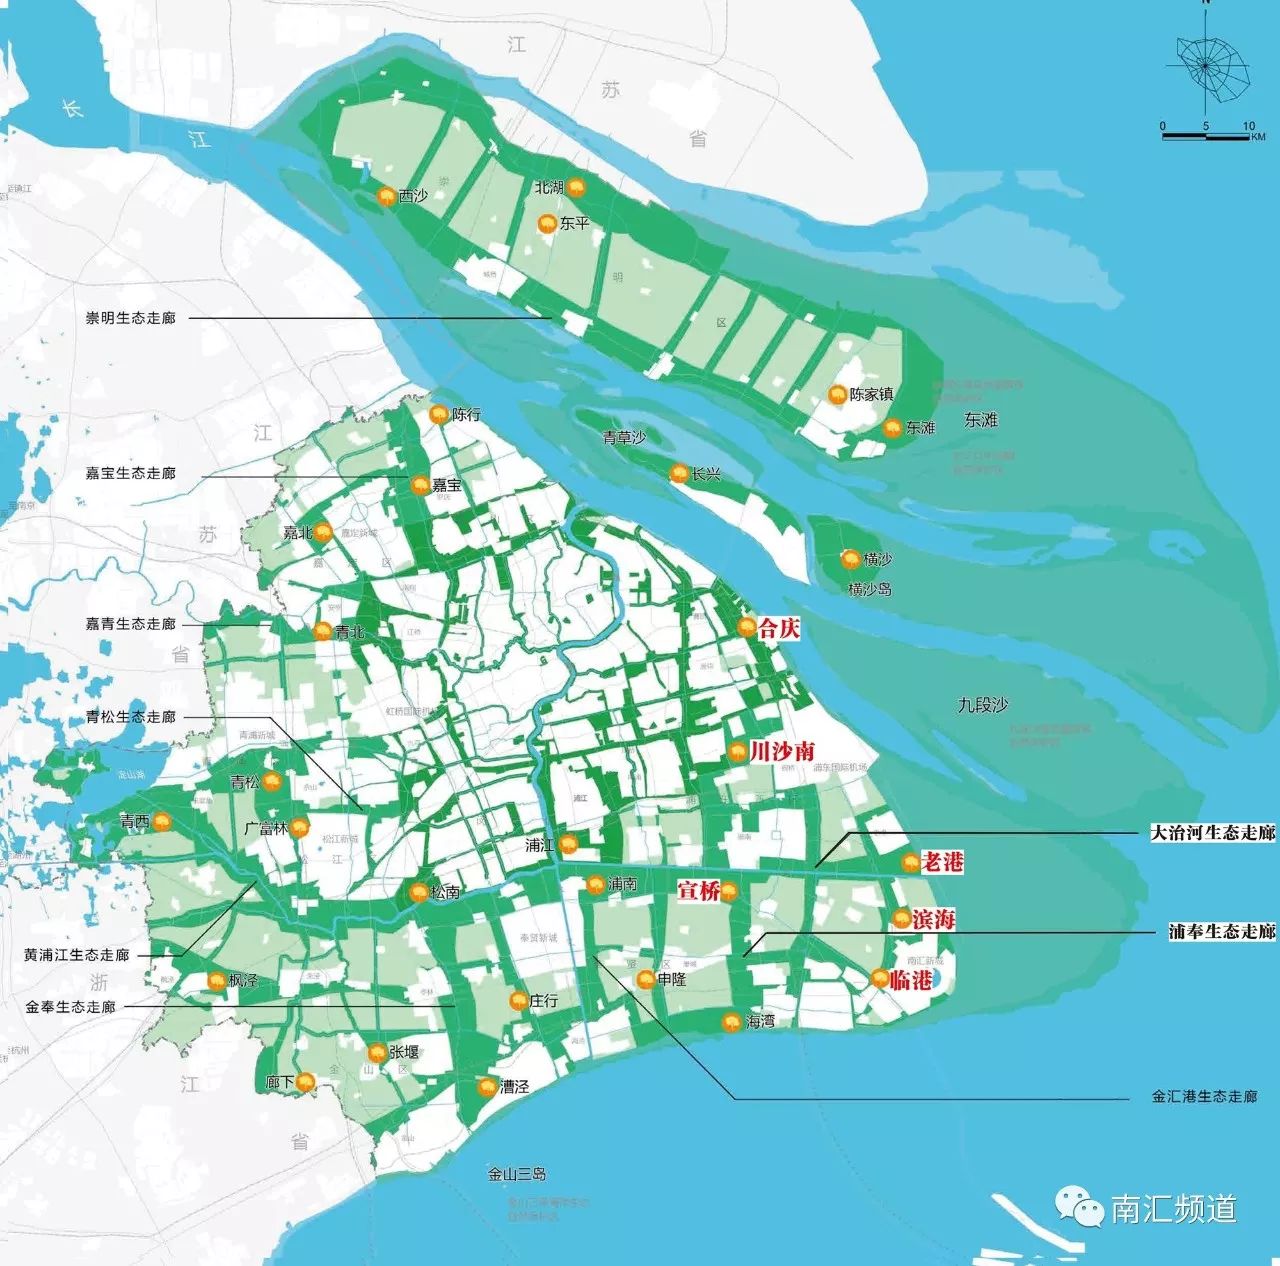 2035更美好 *特别声明:素材整理自《上海市城市总体规划(2017—2035年